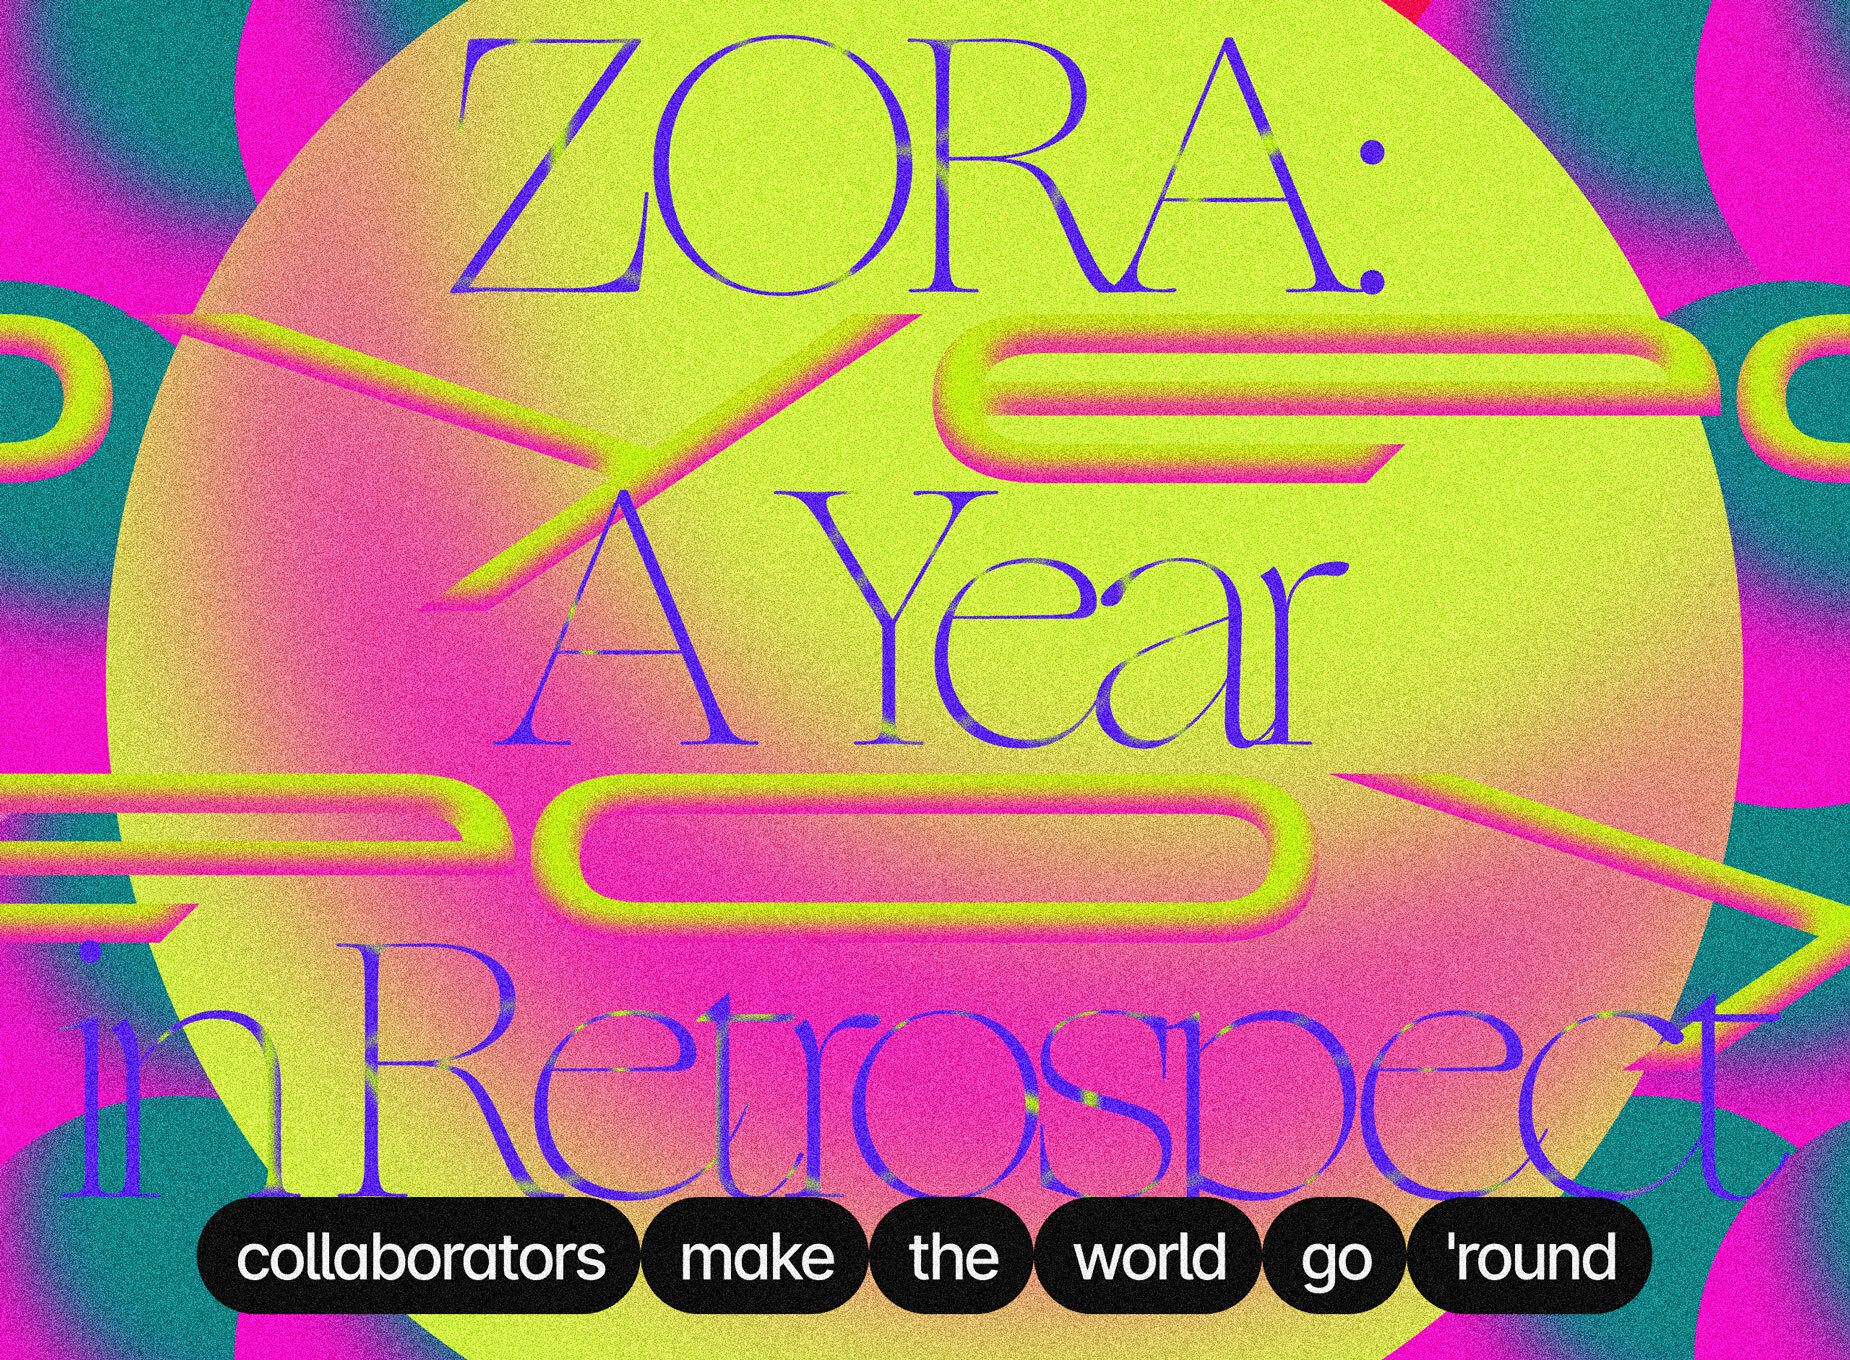 ZORA: A Year in Retrospect